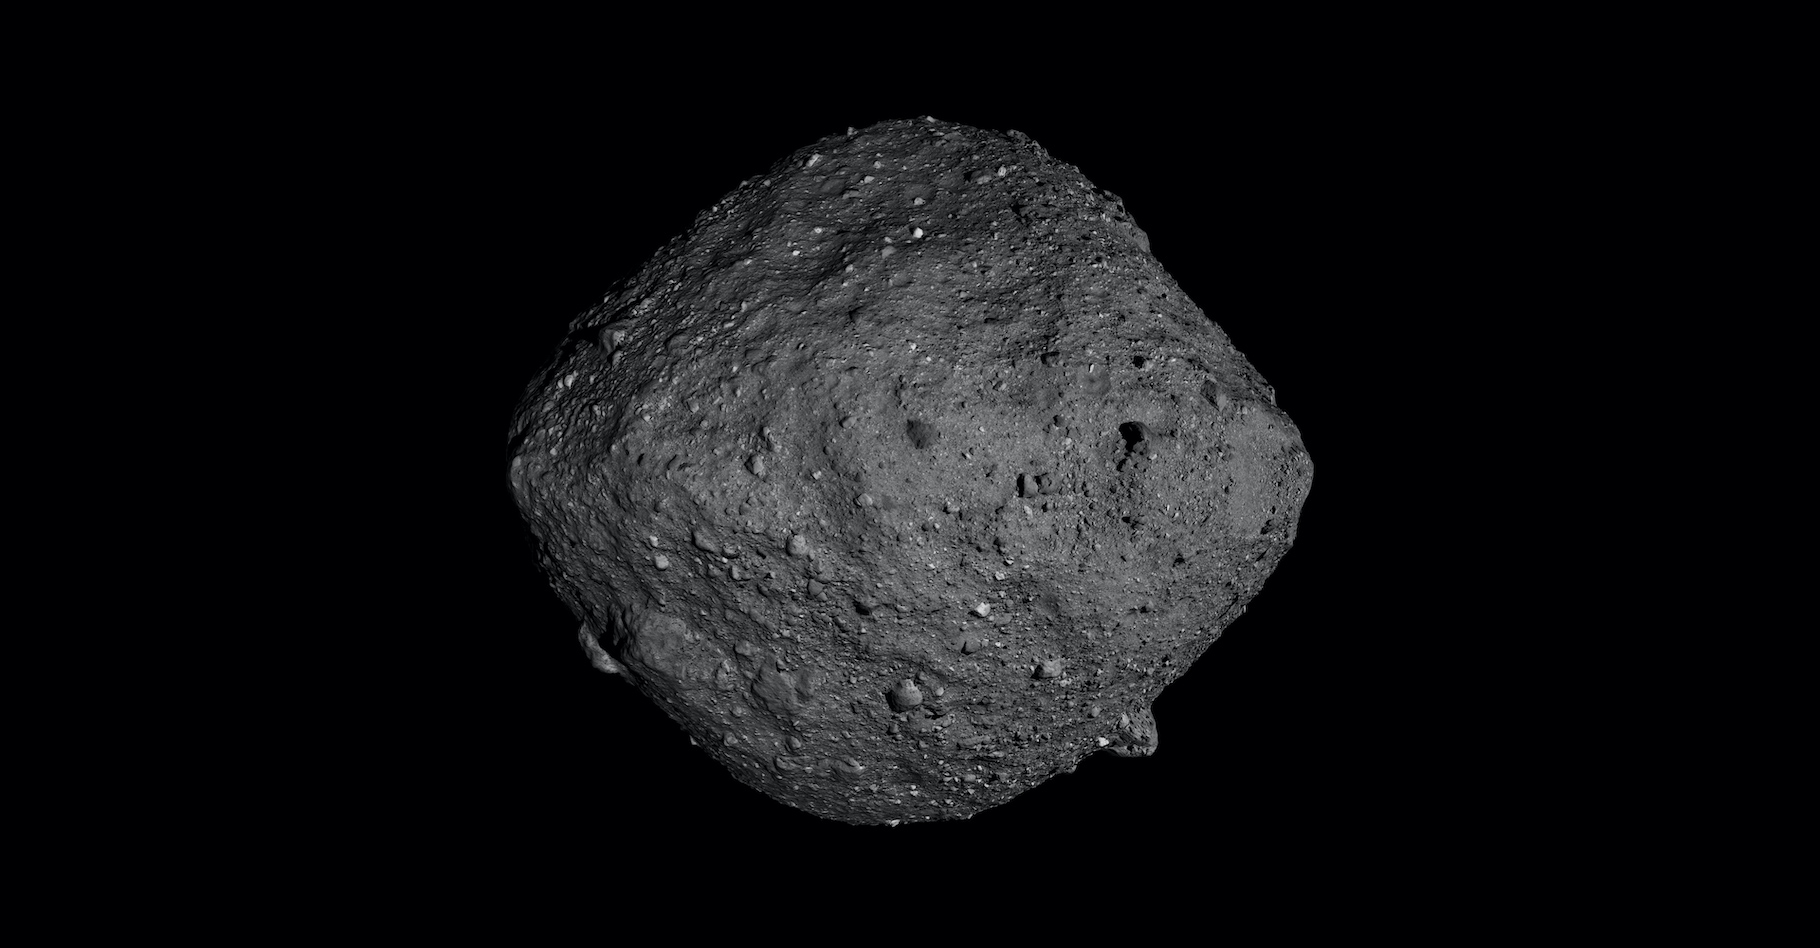 Les ingénieurs de la Nasa se préparent à poser la sonde Osiris-Rex sur l’astéroïde Bennu afin de prélever des échantillons de roche. Ce sera le 20 octobre prochain. © Nasa, Goddard, SVS